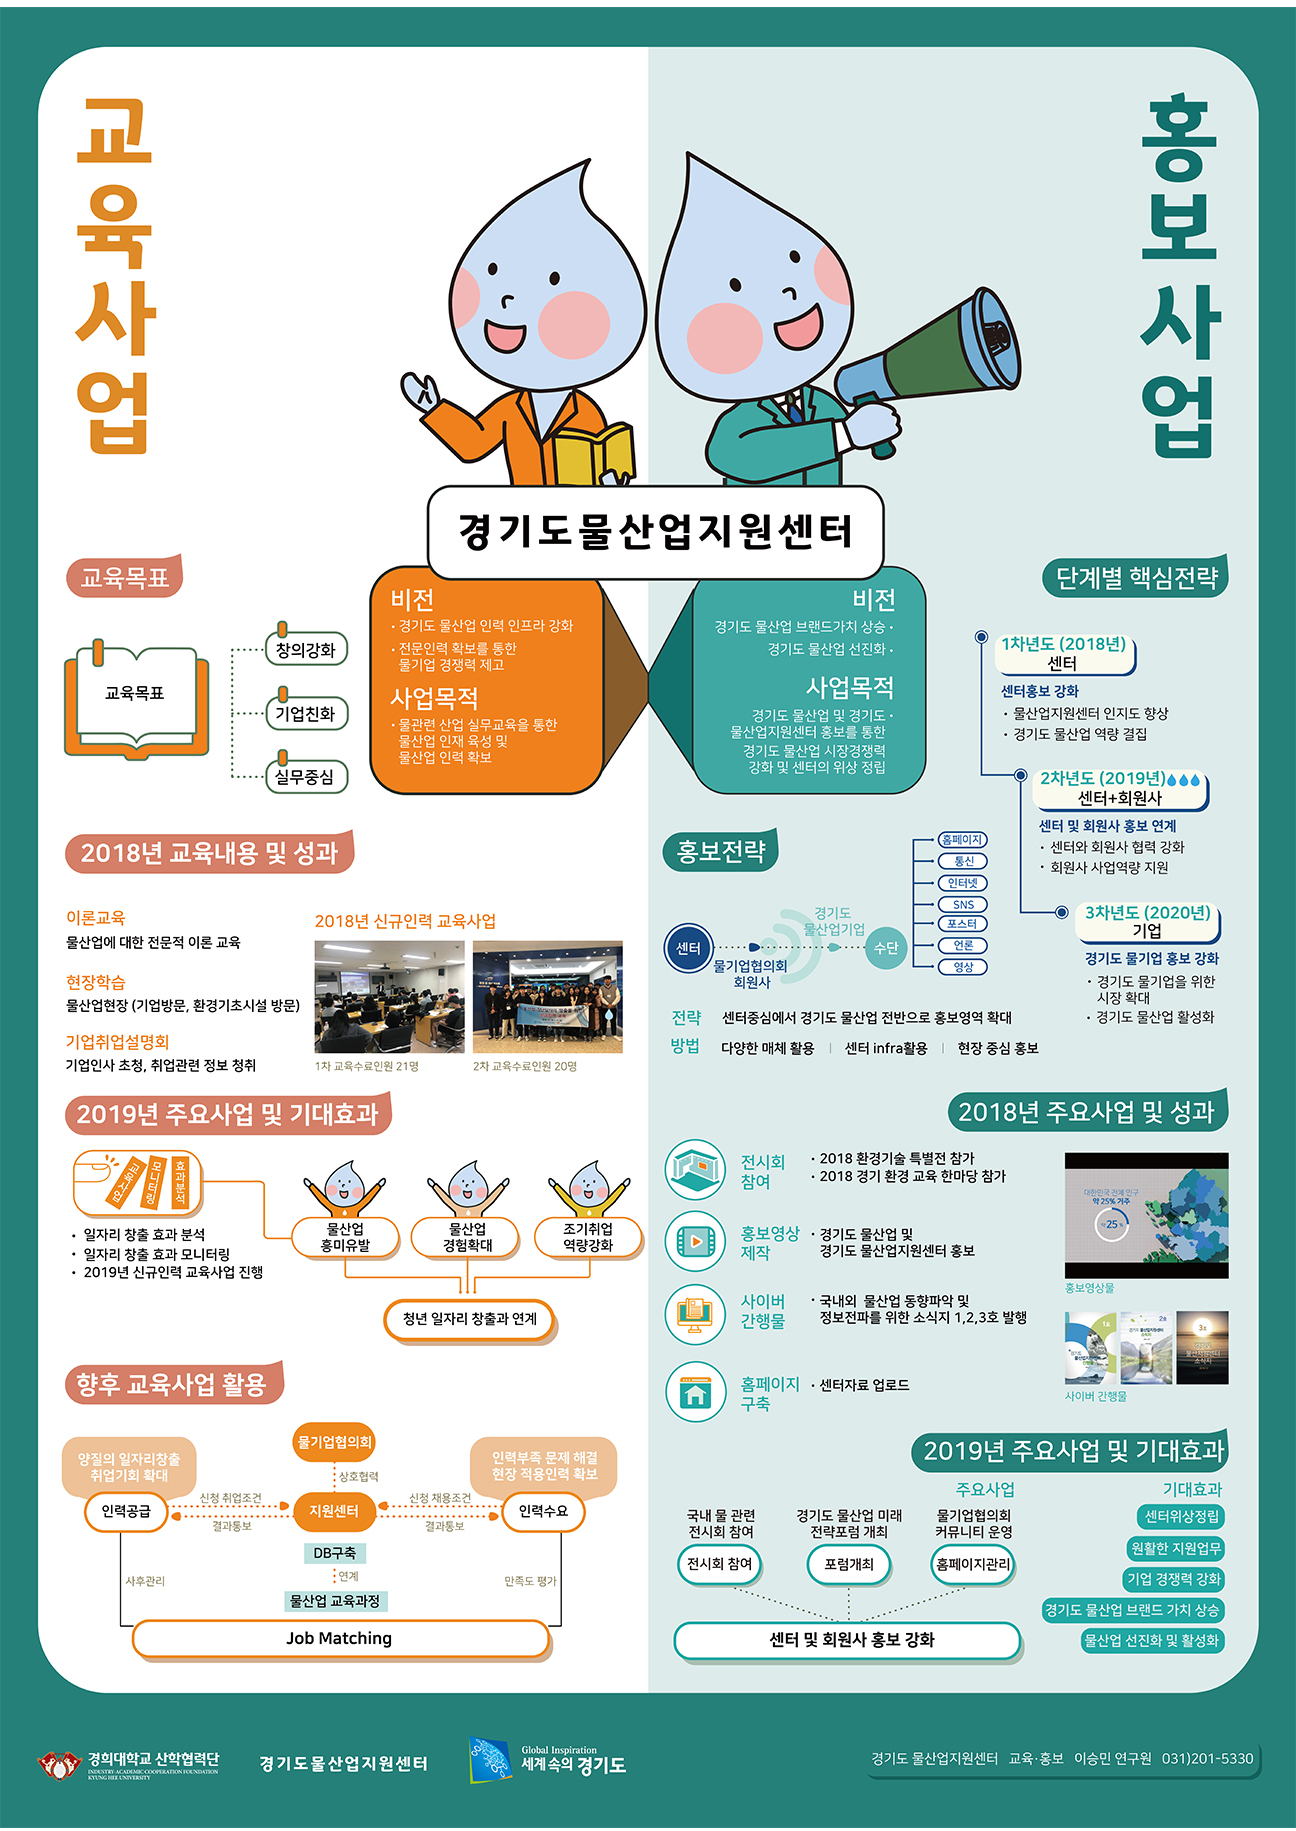 경기도 물산업지원센터 교육, 홍보사업 소개 포스터 